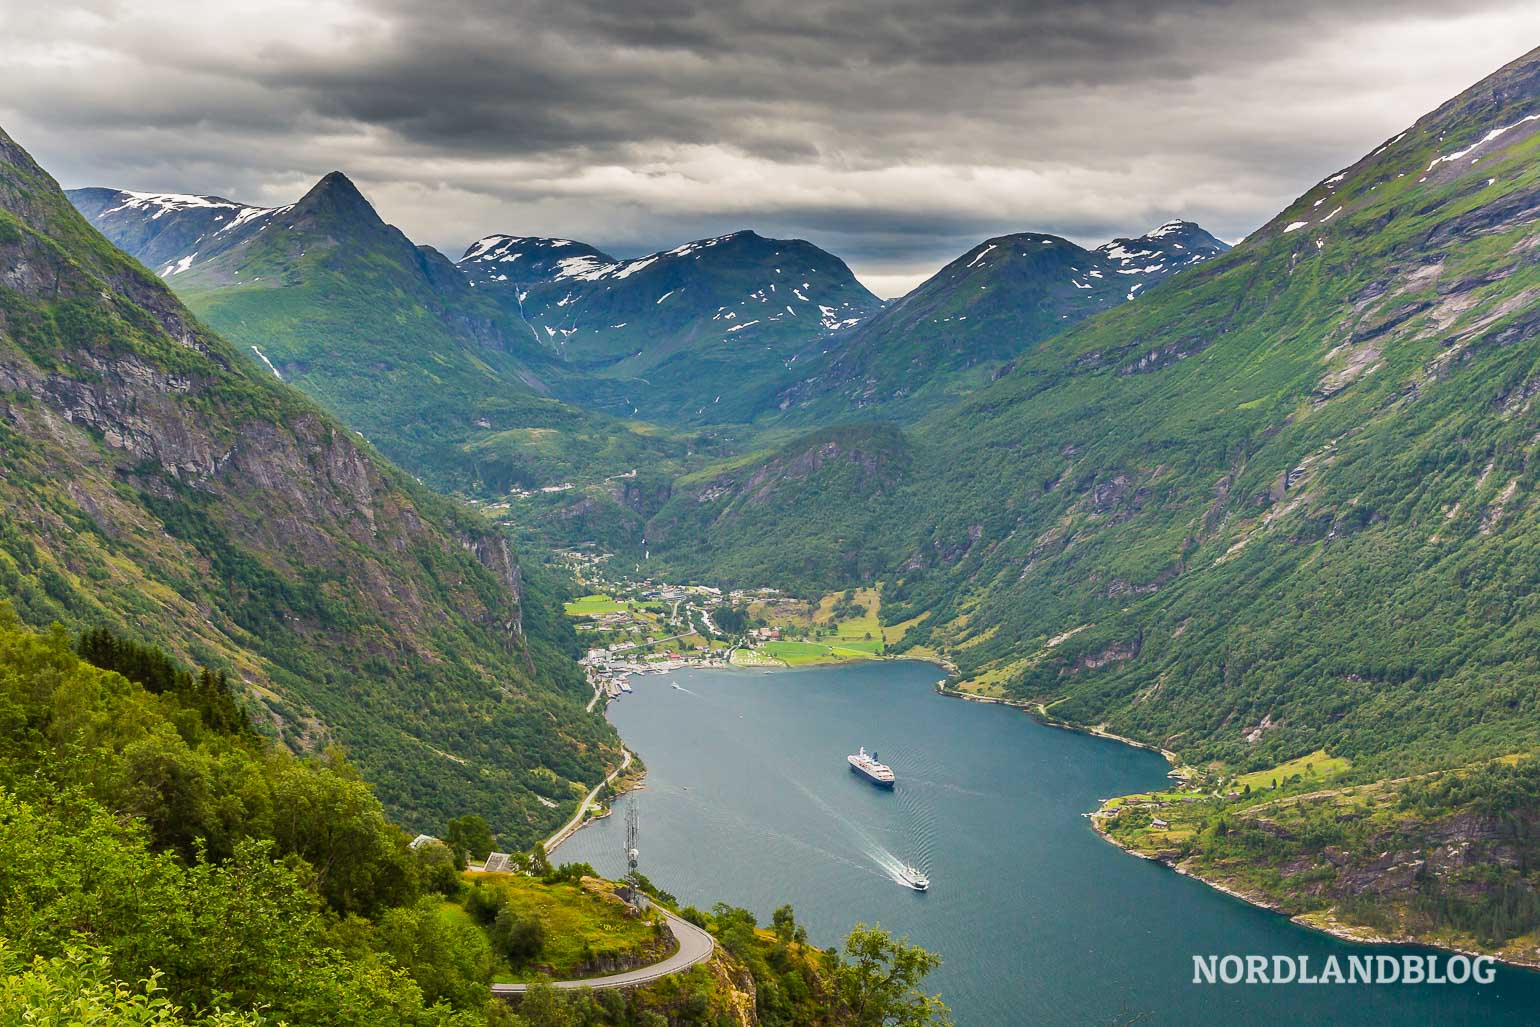 Adlerschwingen Aussichtspunkt am Geirangerfjord in Norwegen